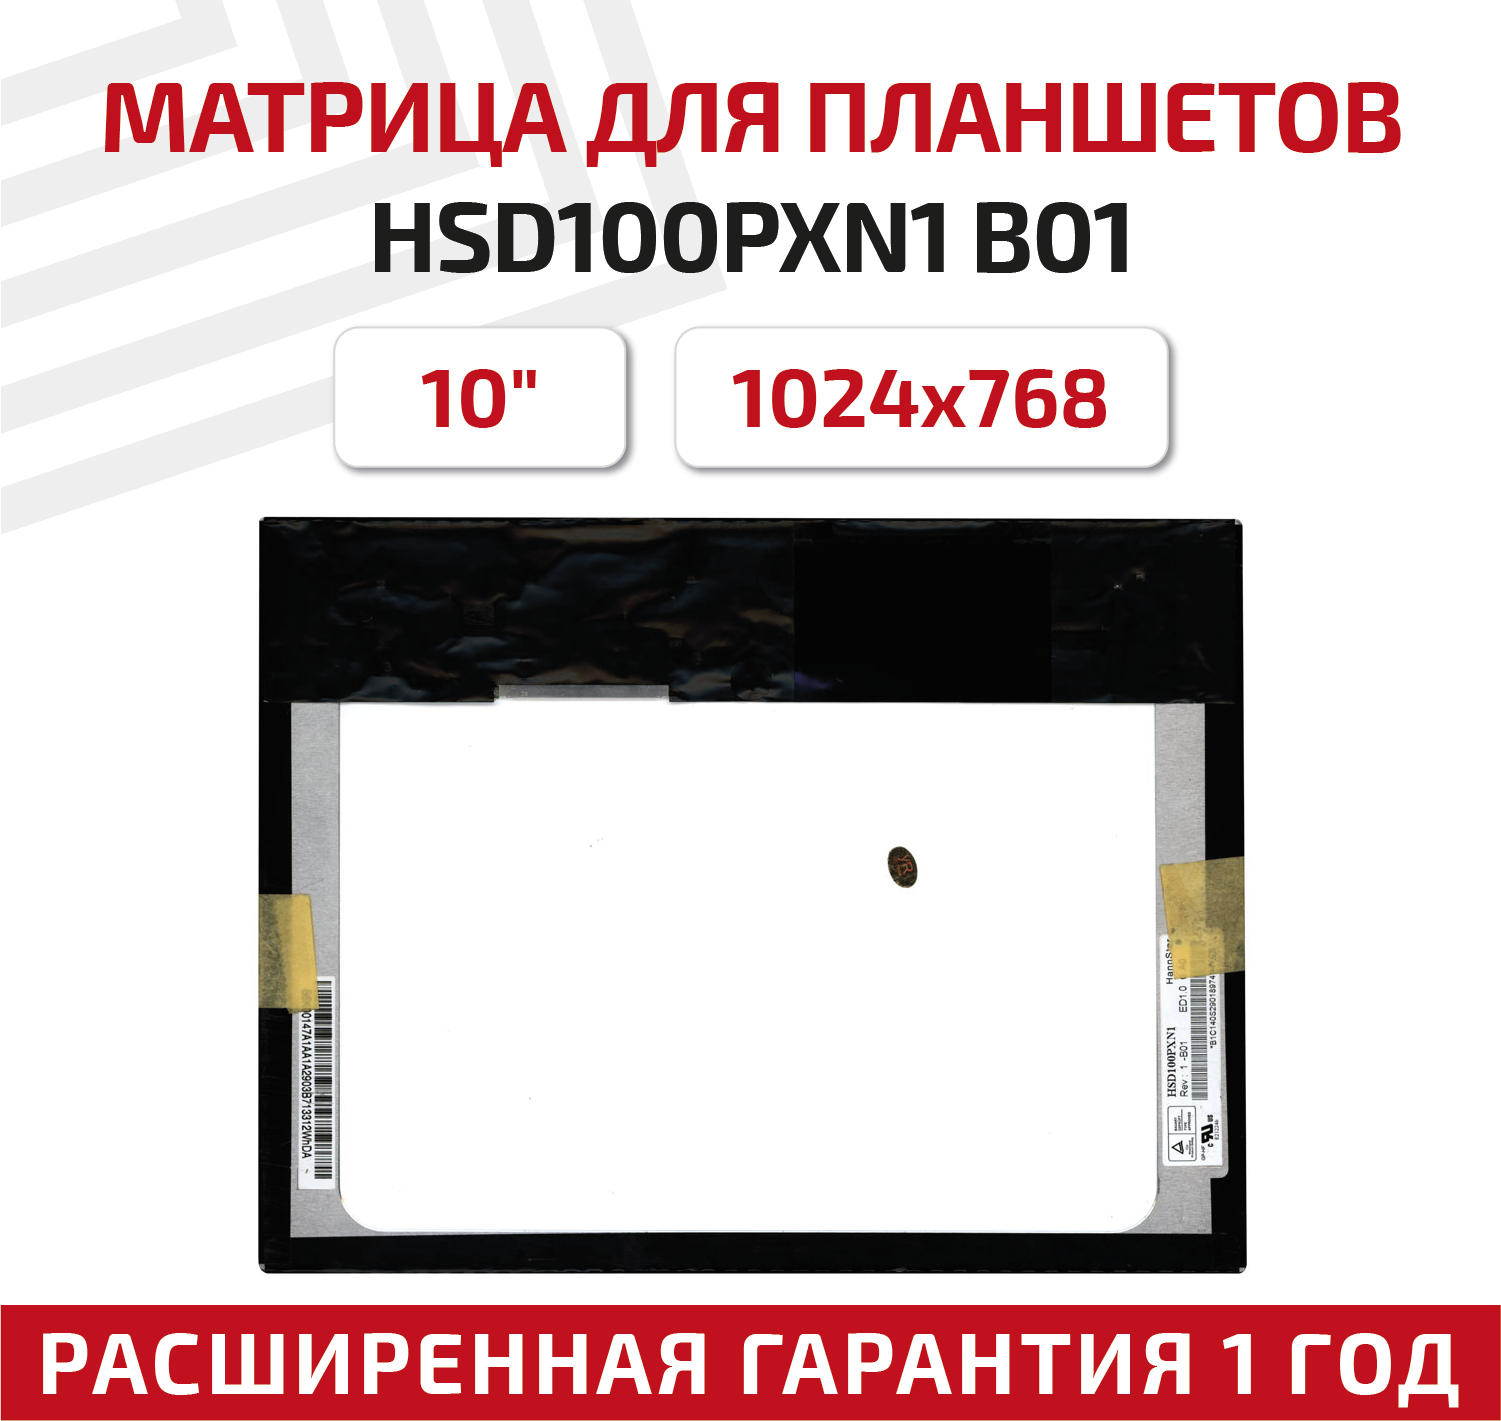 Матрица (экран) HSD100PXN1 B01 для планшета, 10", 1024x768, светодиодная (LED), матовая